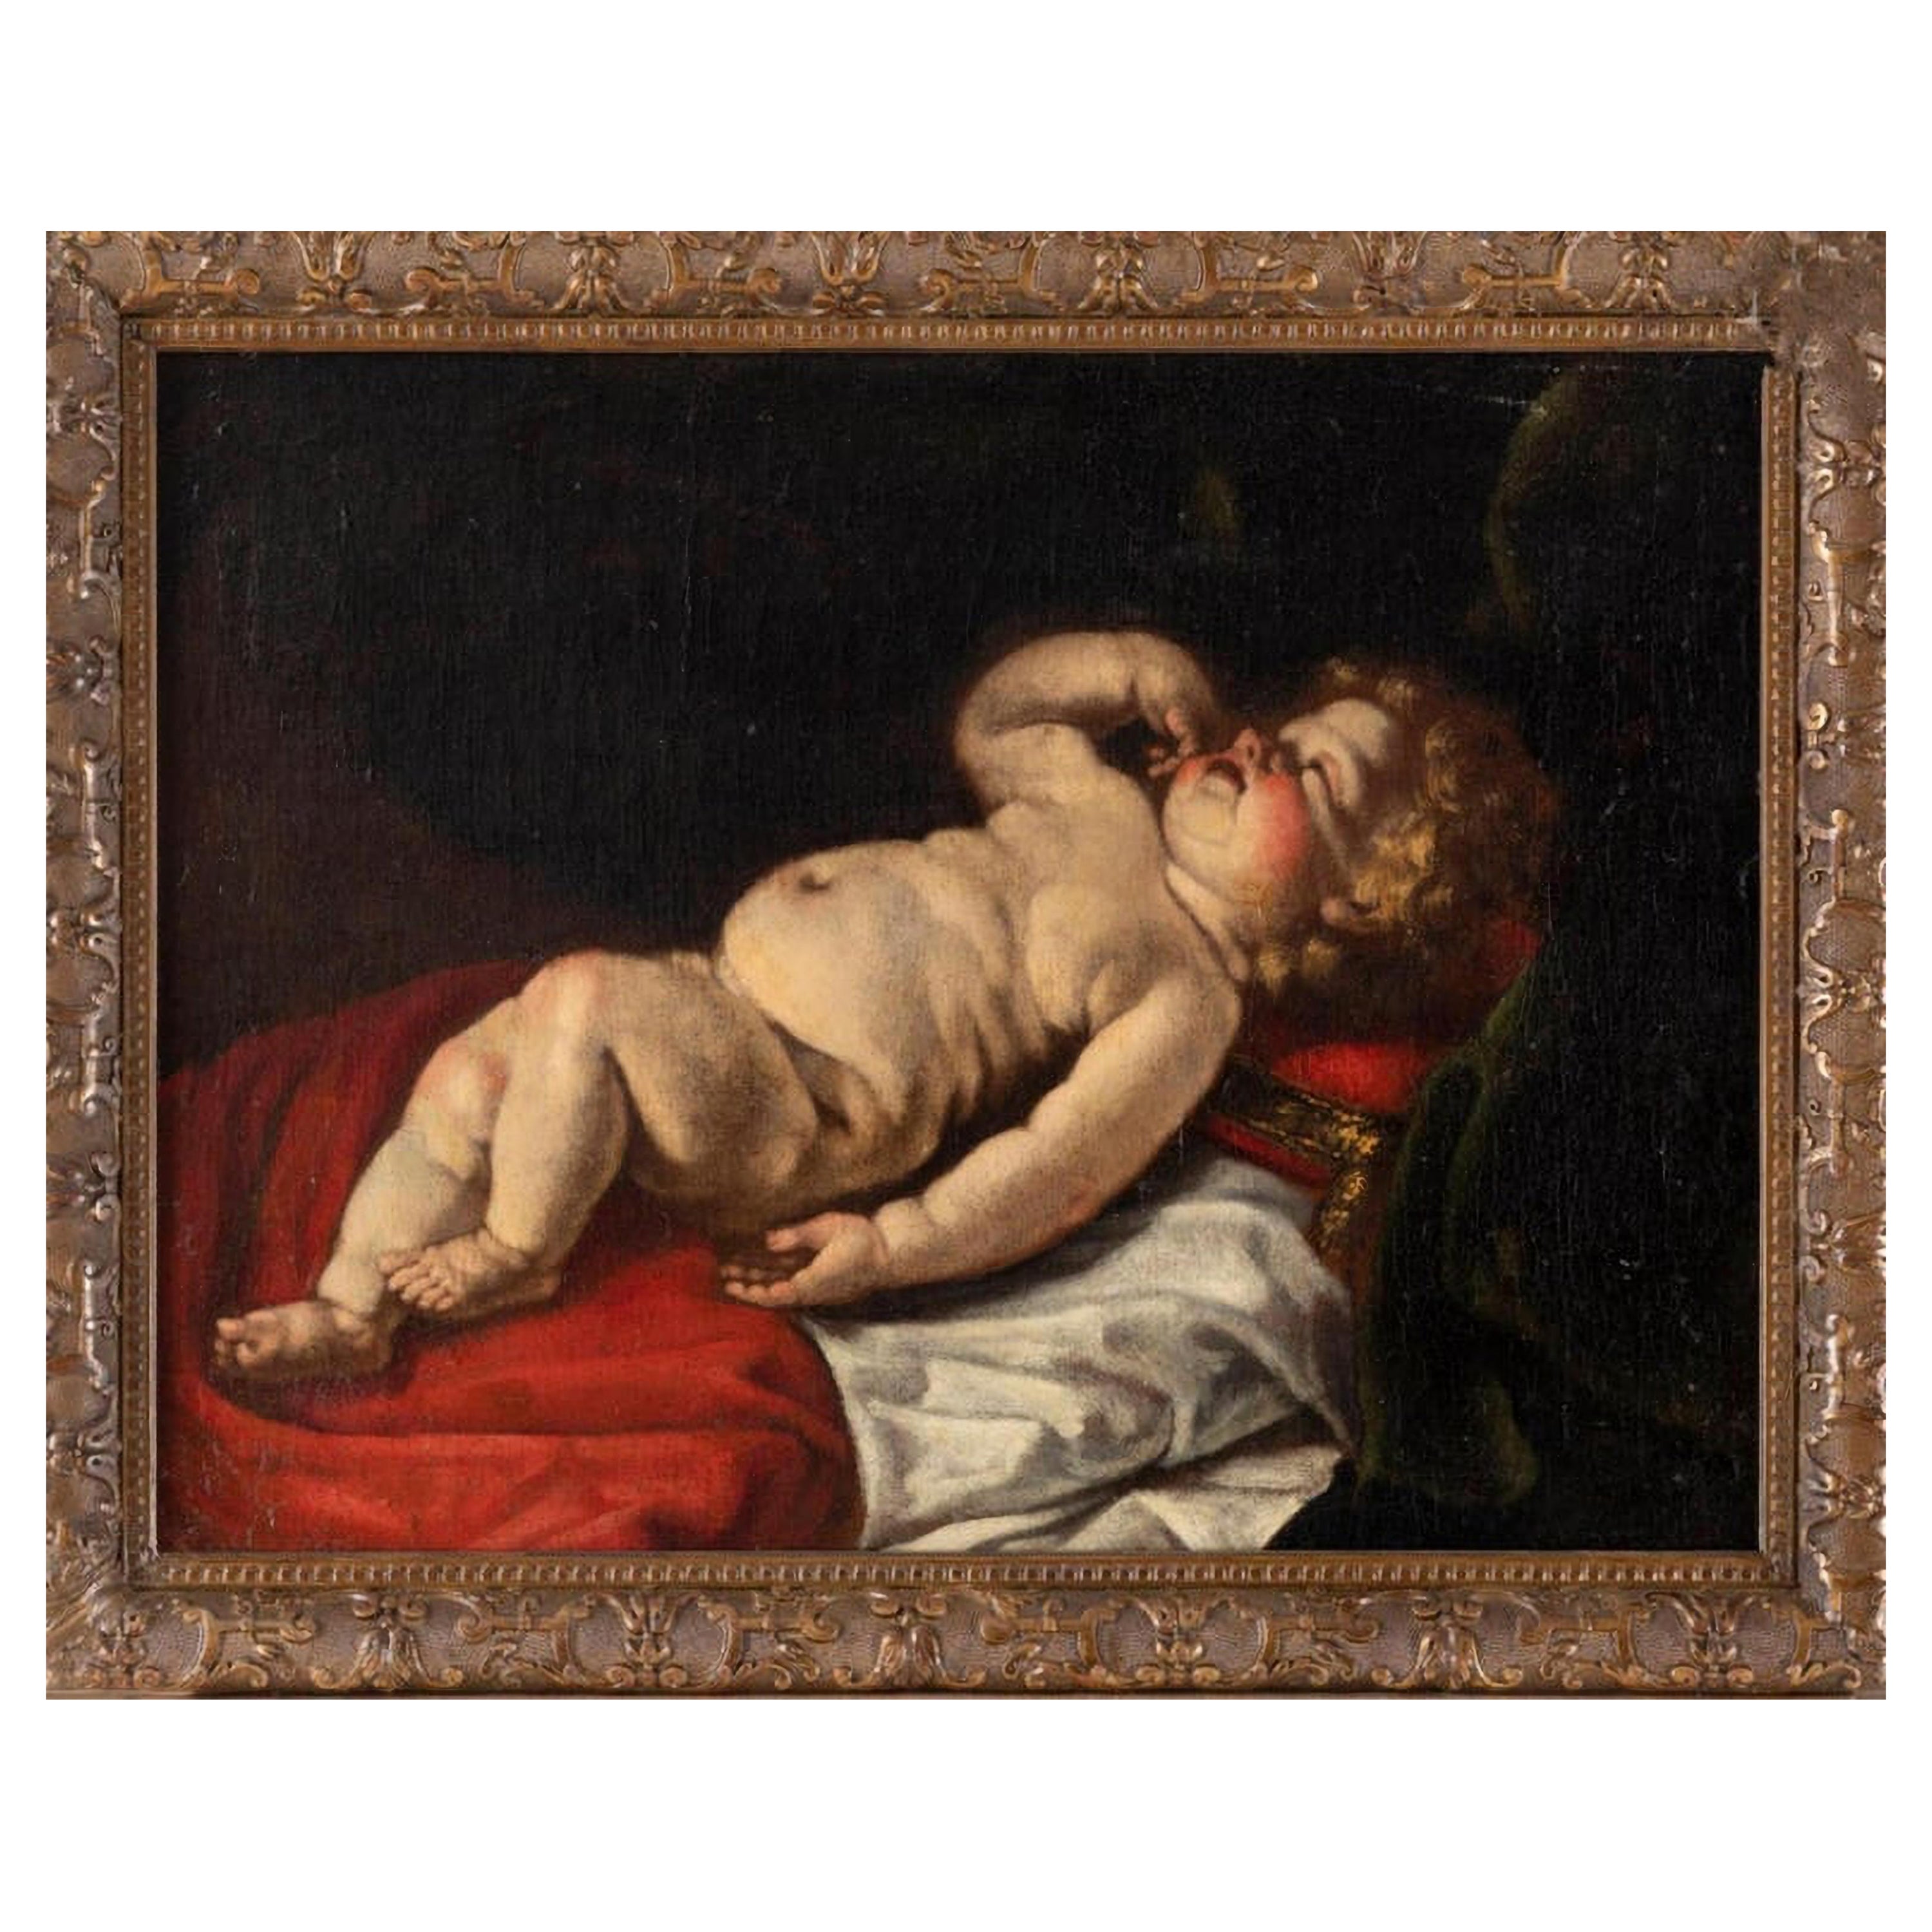 Luigi Miradori circa 1600 - circa 1657 "Young Sleeping Child" 17ème siècle VIDE0